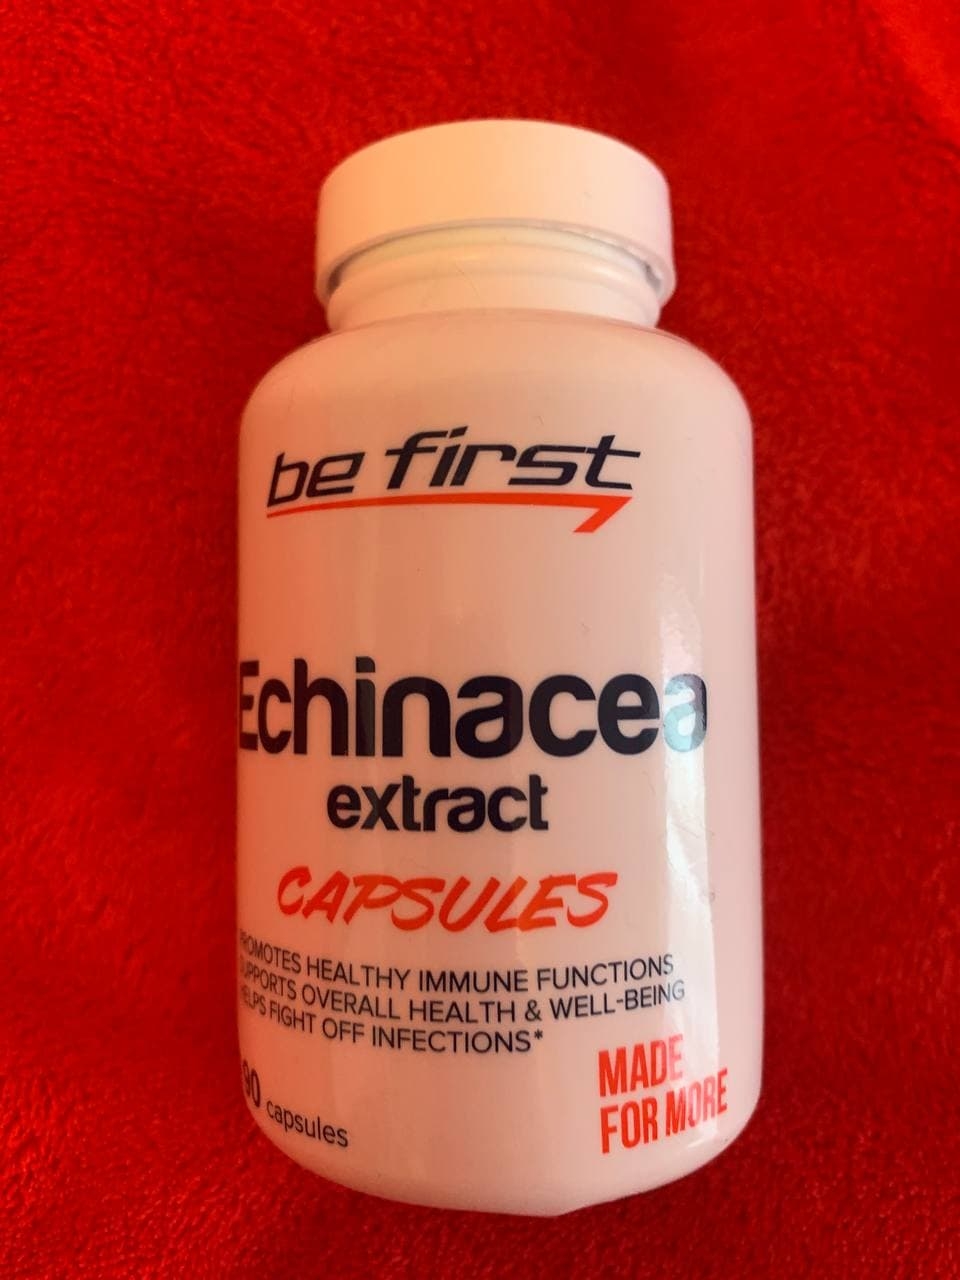 Be First Echinacea extract capsules, 90 капсул - Профилактическое средство, хорошее